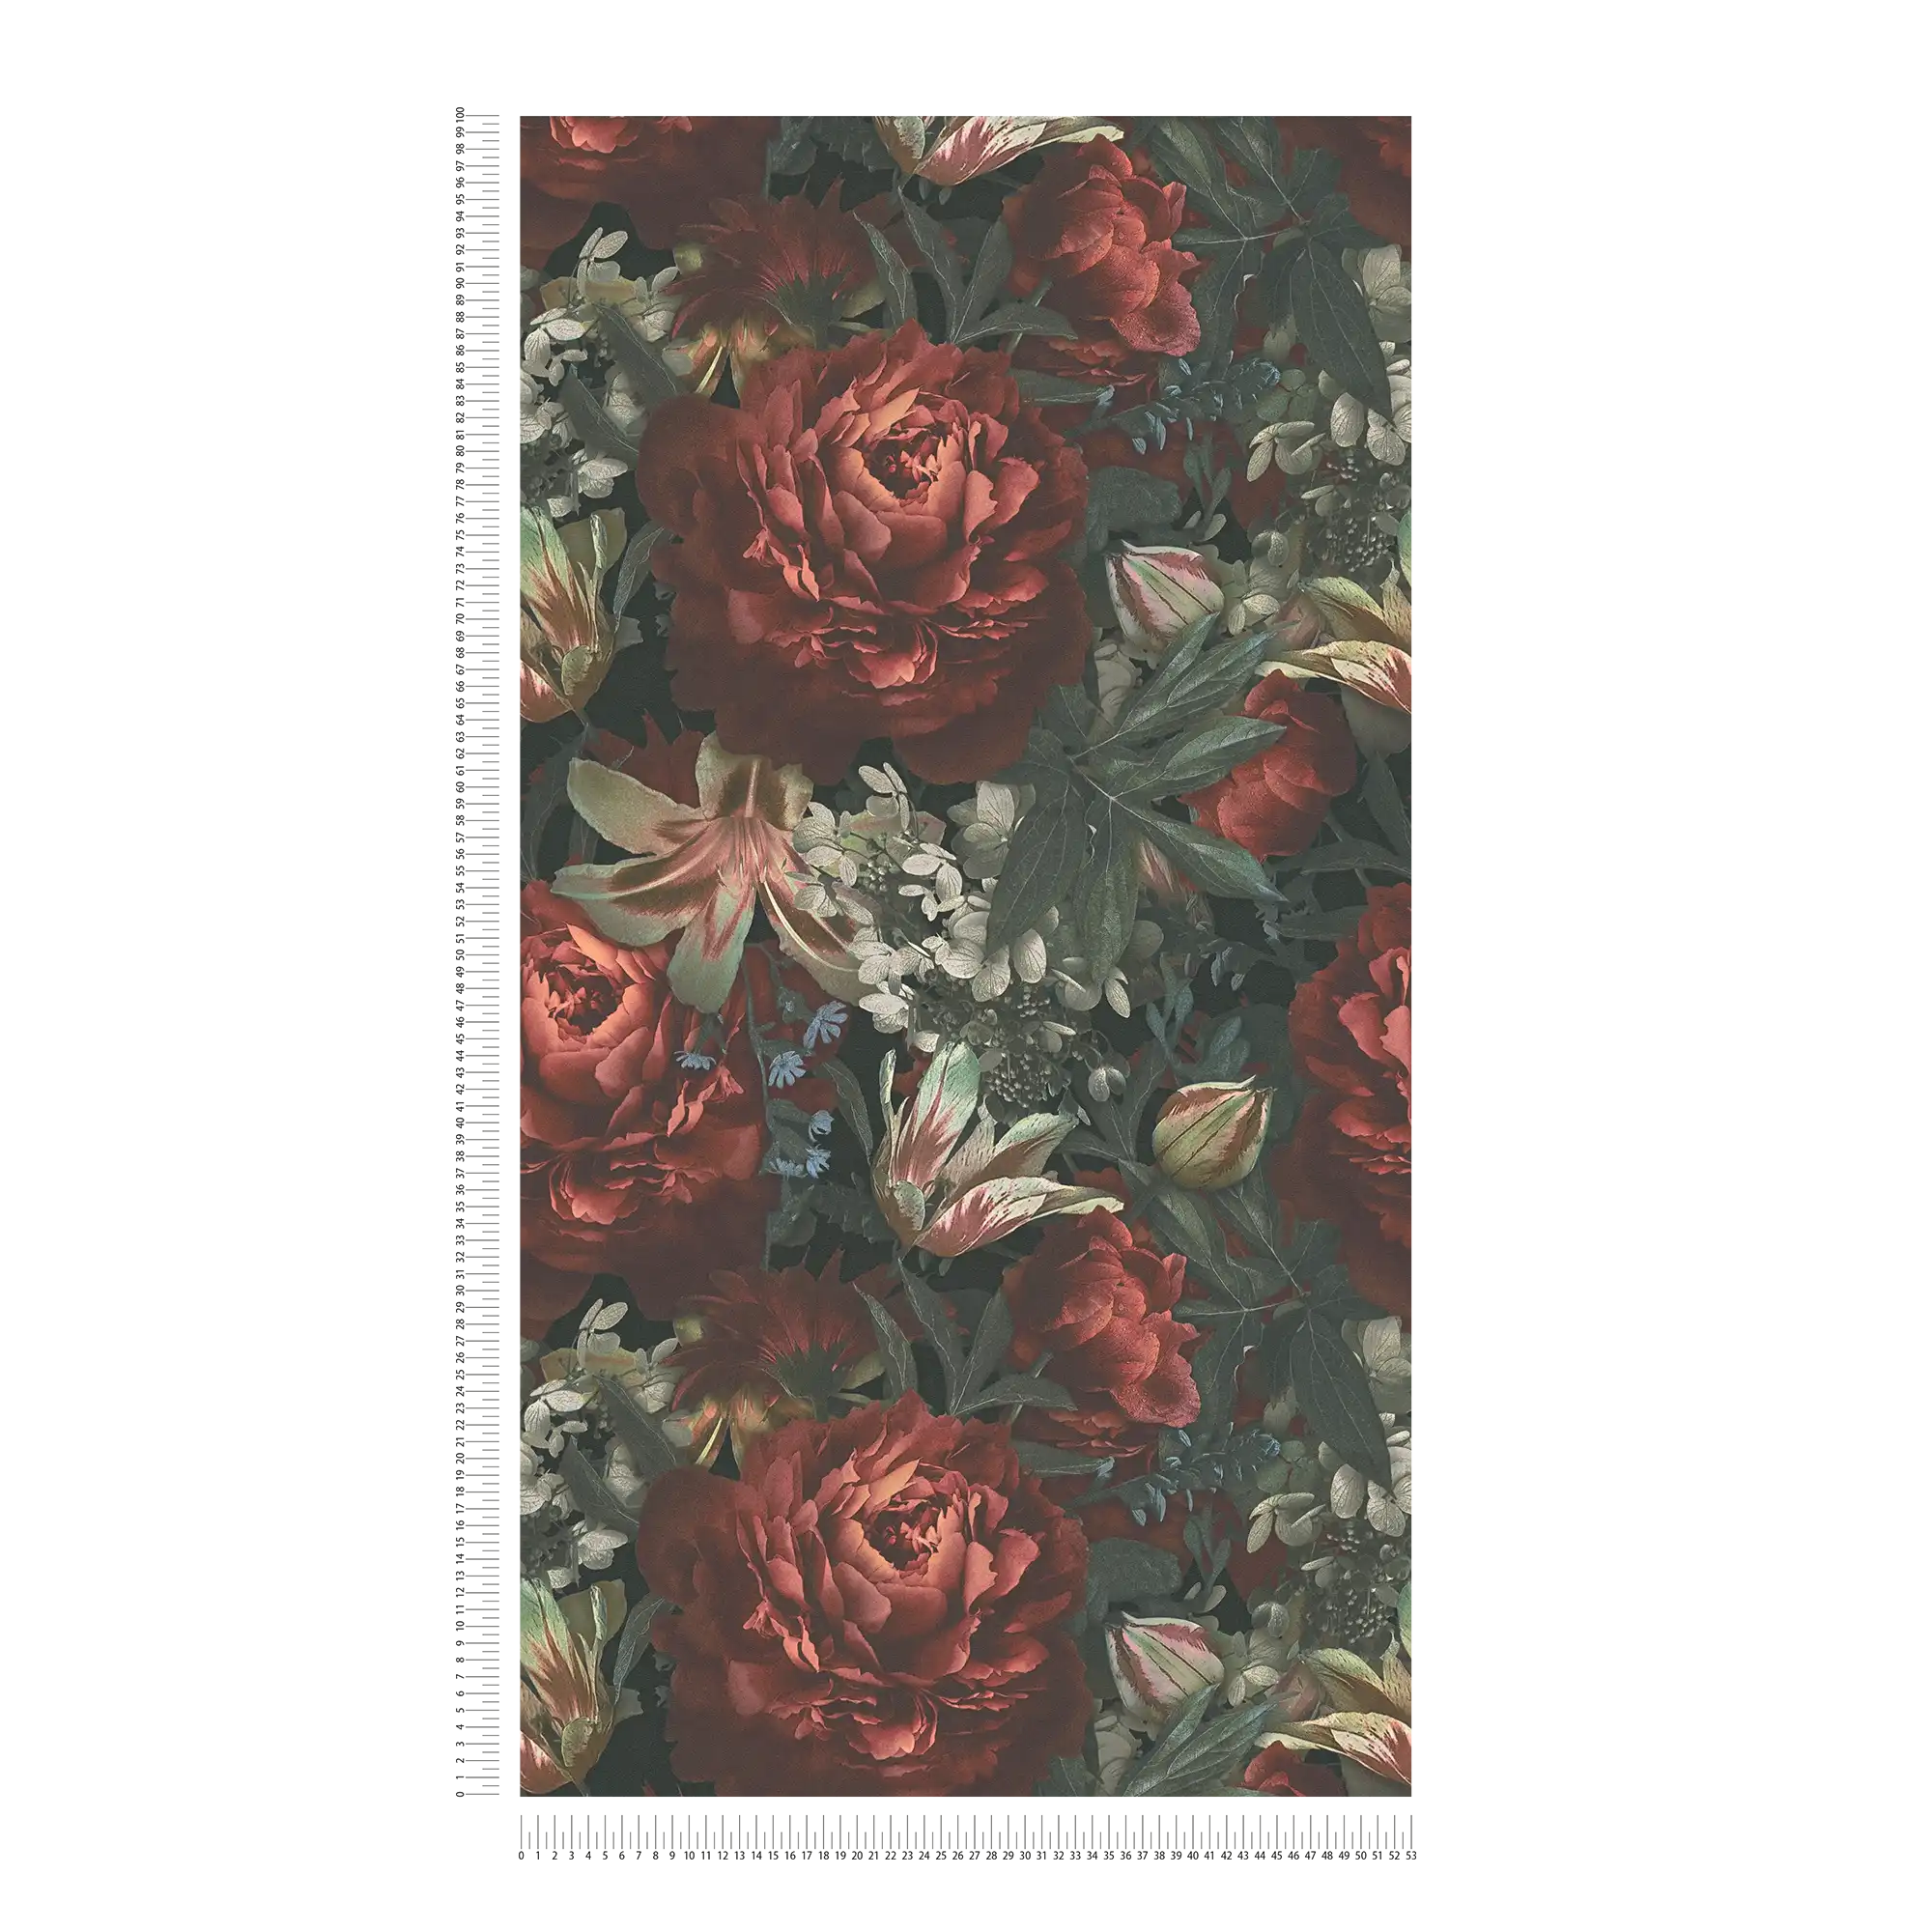             Papier peint fleuri Roses & tulipes style vintage - Vert, rouge, crème
        